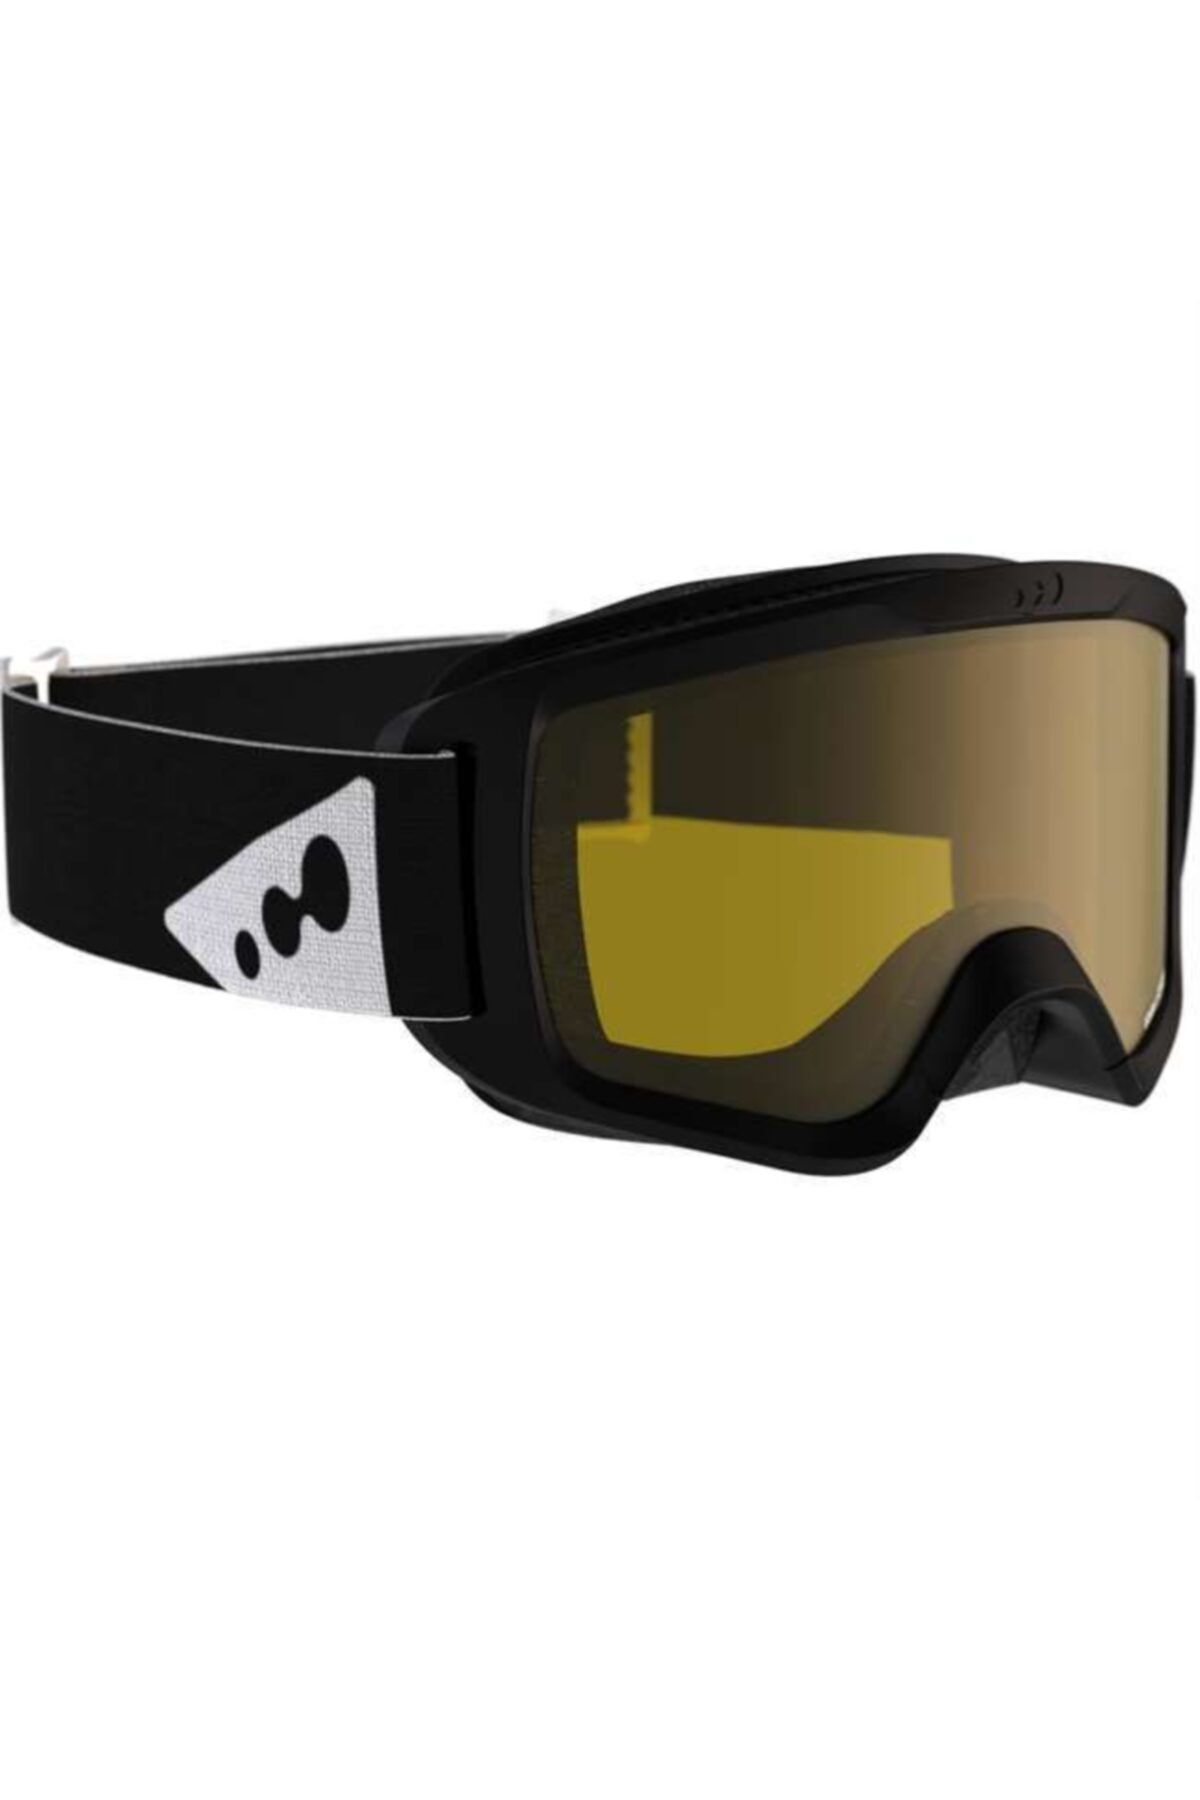 DOGASTR Kayak / Snowboard Gözlüğü - Yetişkin - Siyah - Wedze - Large